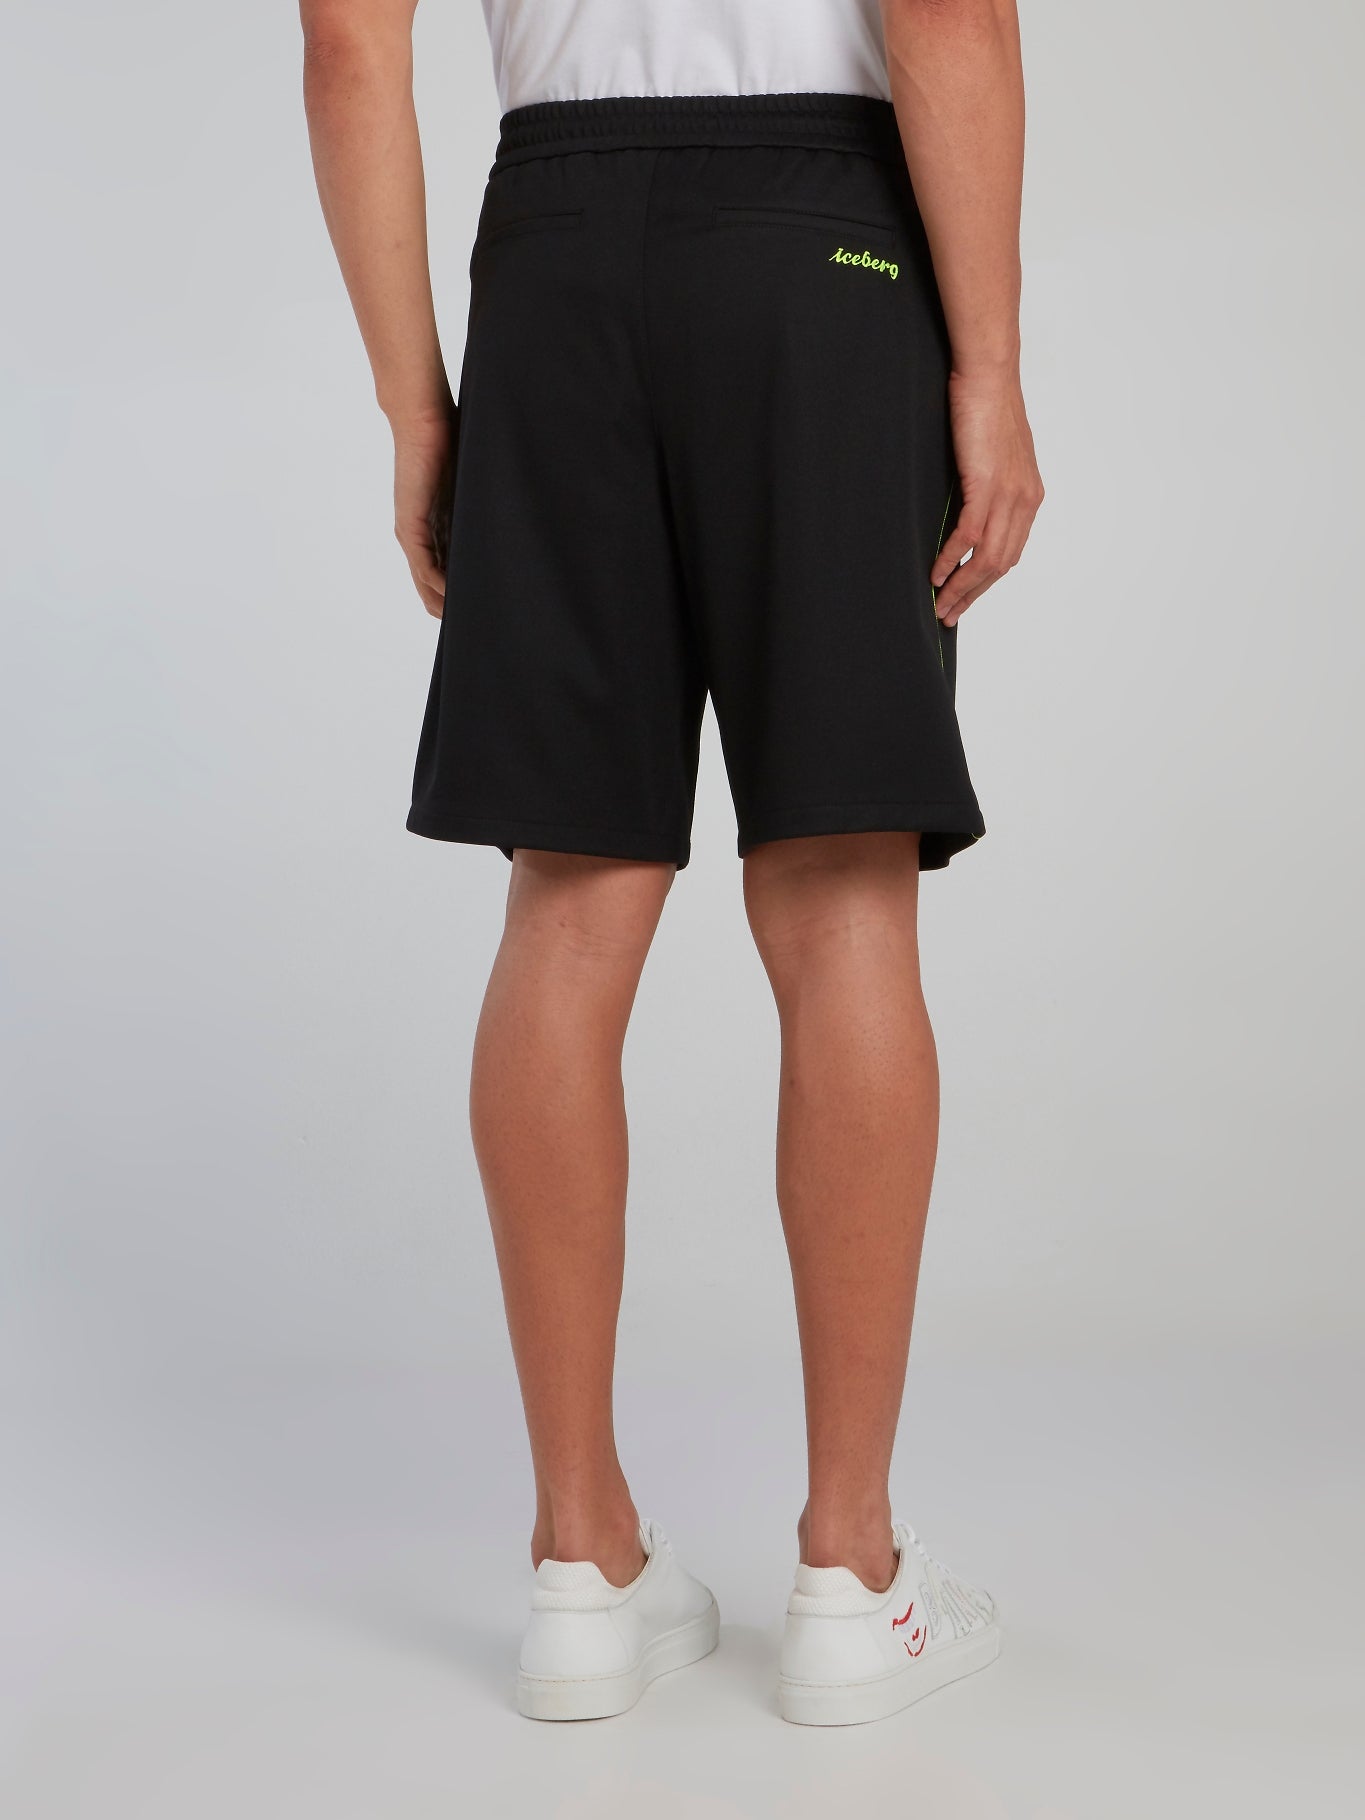 Neon Detail Black Drawstring Shorts